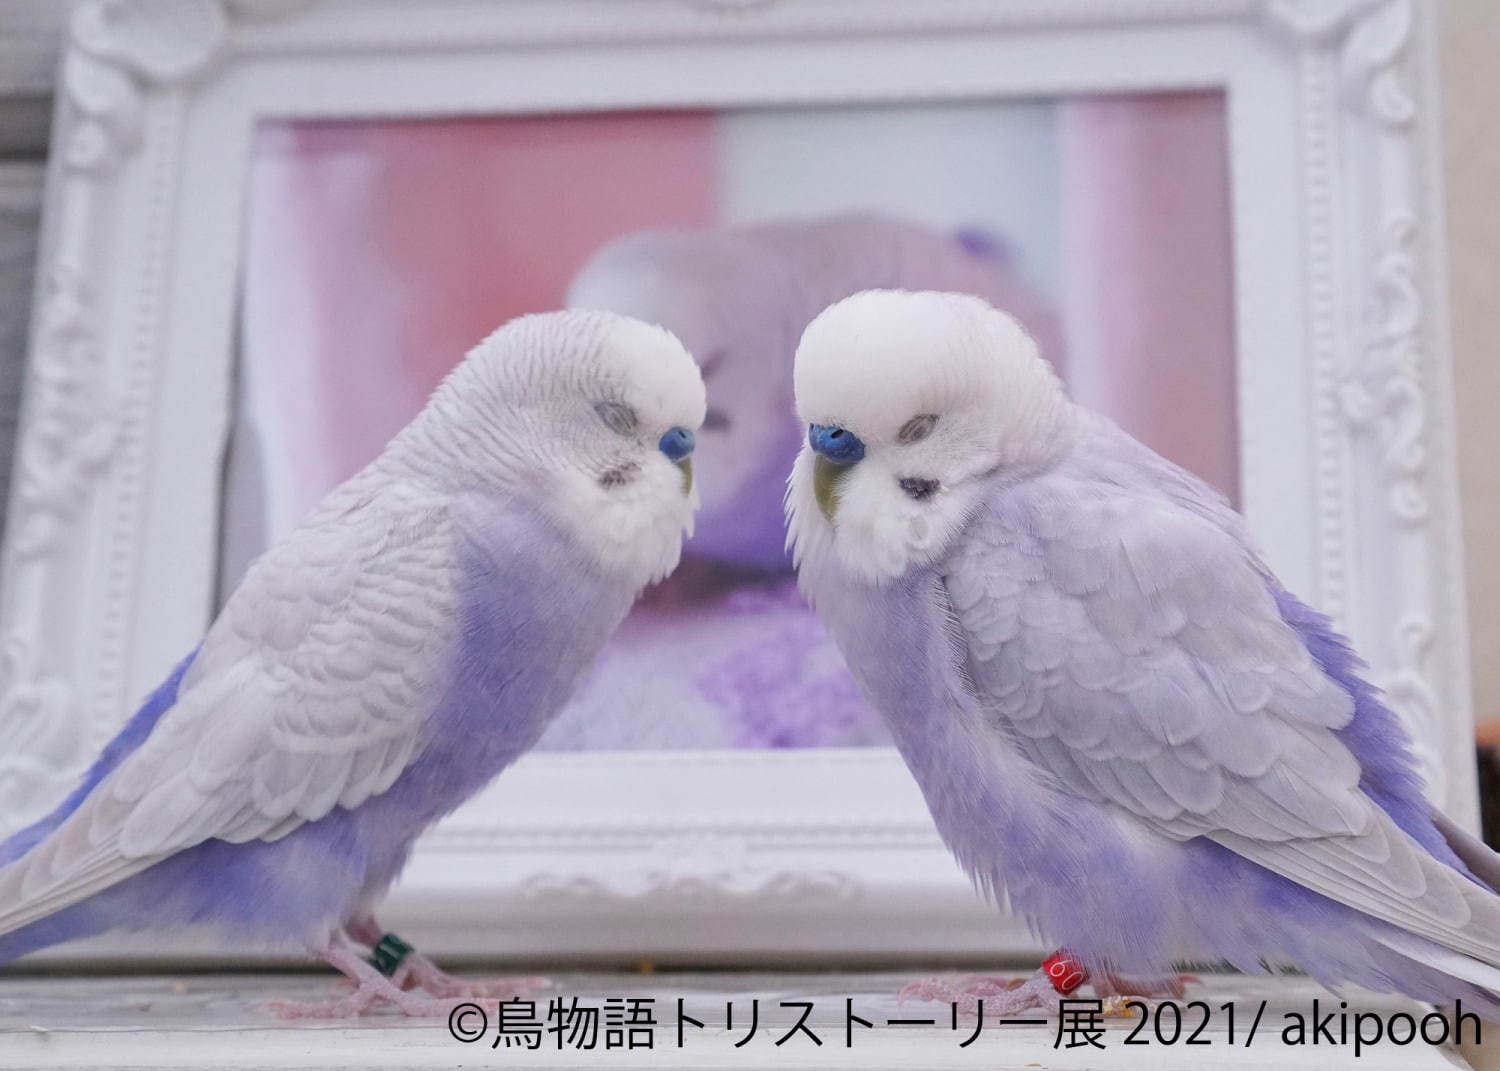 物語トリストーリー展 東京 名古屋で 幻の鳥 やインコの美しい写真 人気クリエイターのグッズも ファッションプレス